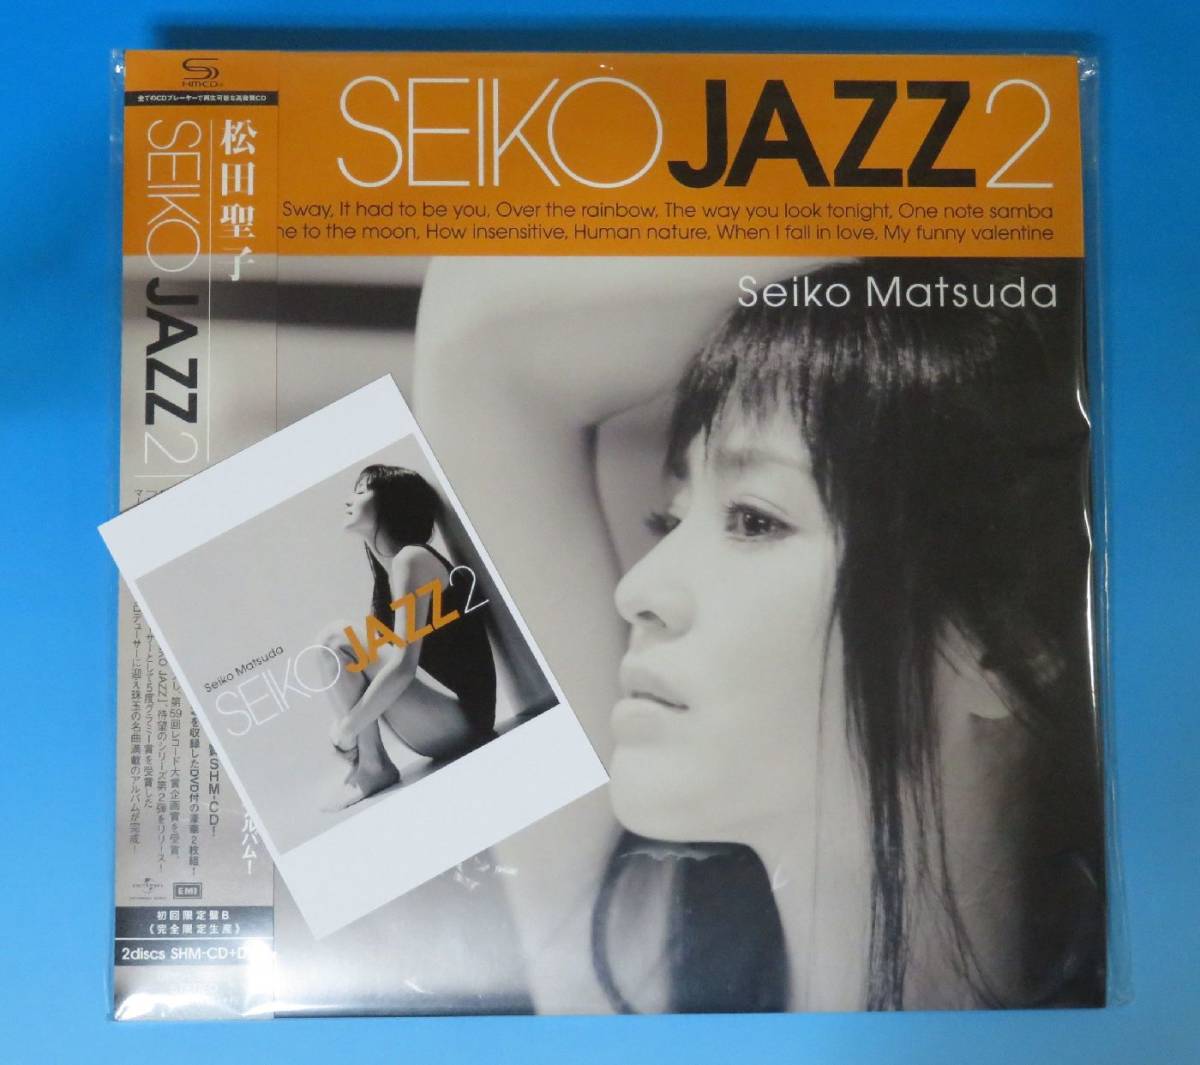 △▼ 松田聖子 『 SEIKO JAZZ 2 』 初回限定盤B SHM-CD+DVD 2枚組 LPサイズジャケット ポストカード付 ▼△_画像1